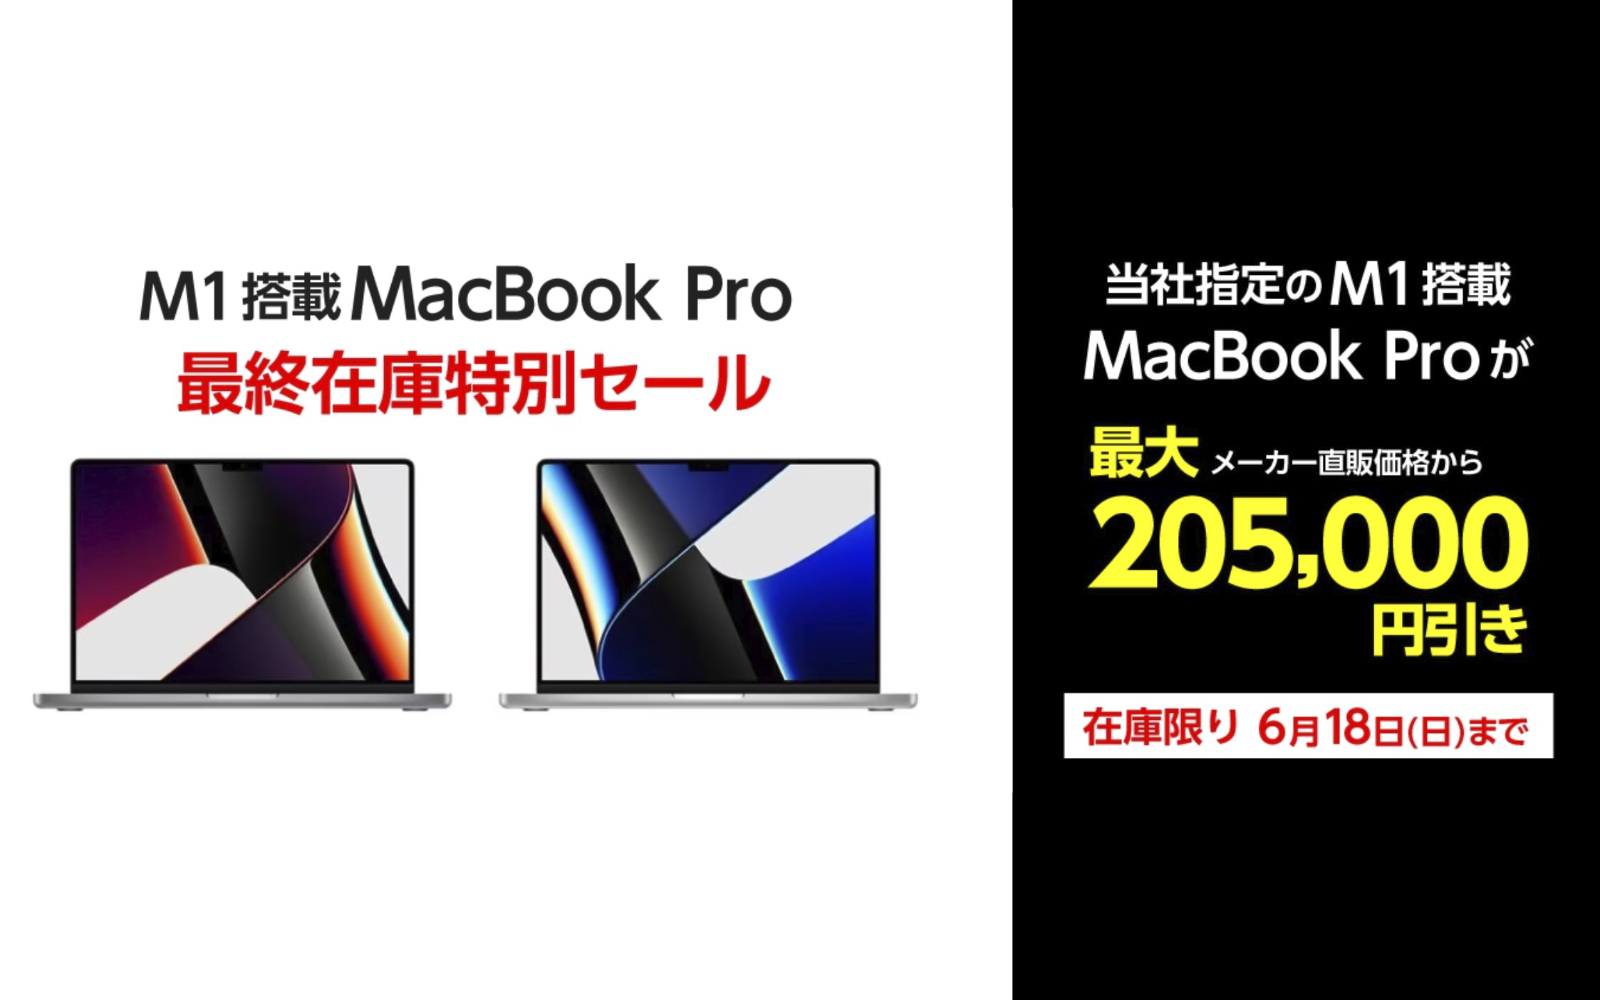 狂気のセール、再び！ヤマダウェブコム、M1 Pro/Max MacBook Proを最大 ...